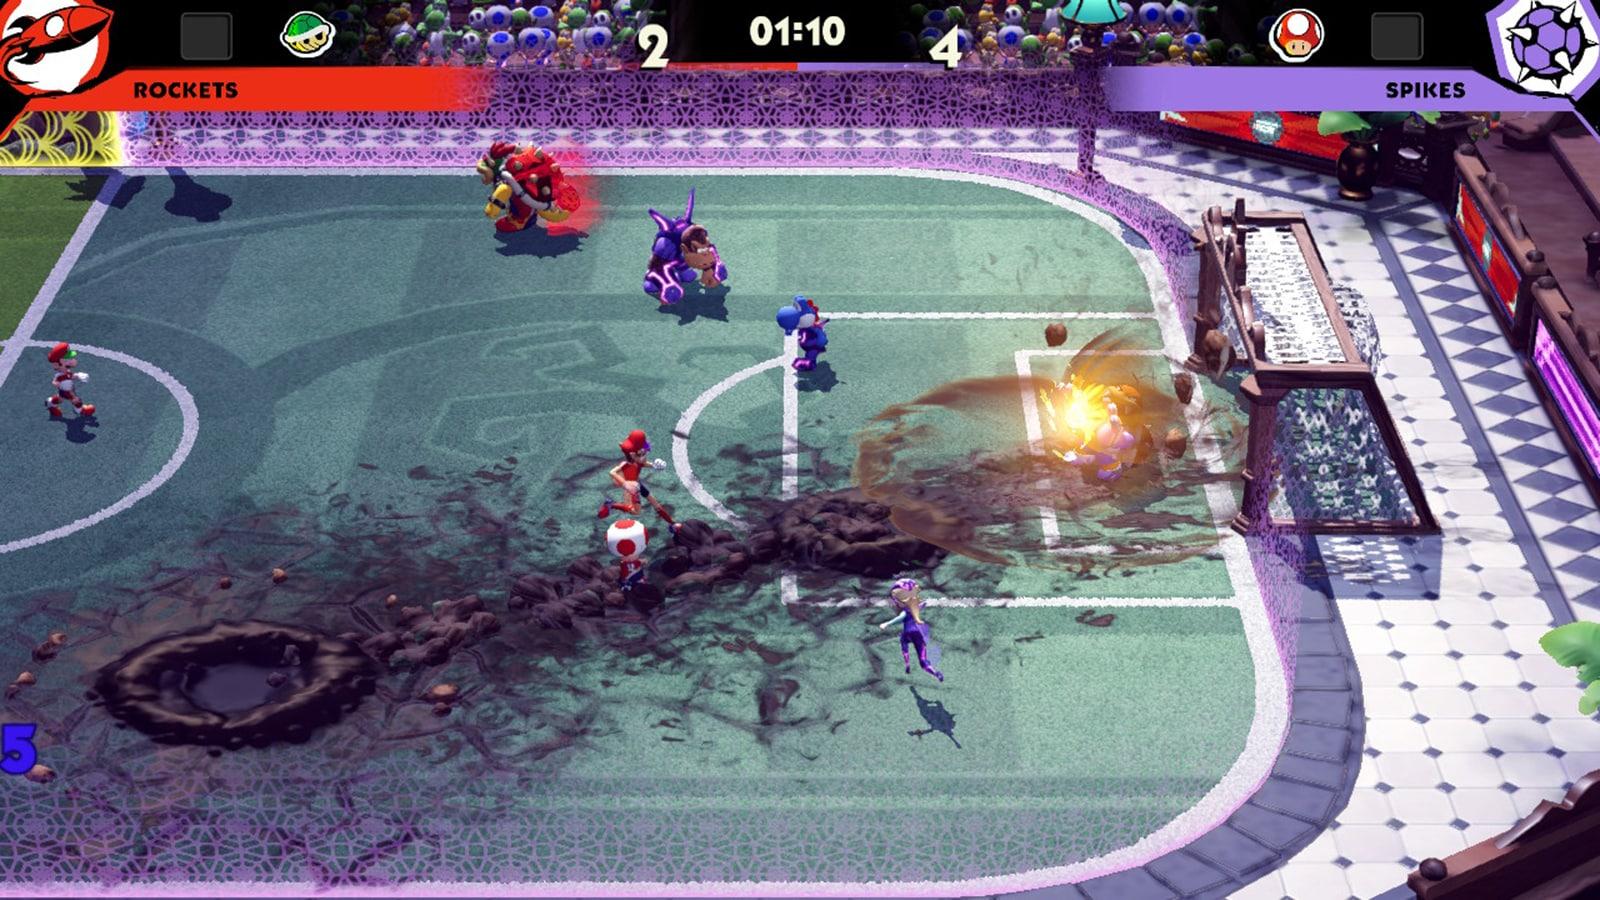 A screenshot of an online match in Mario Strikers Battle League